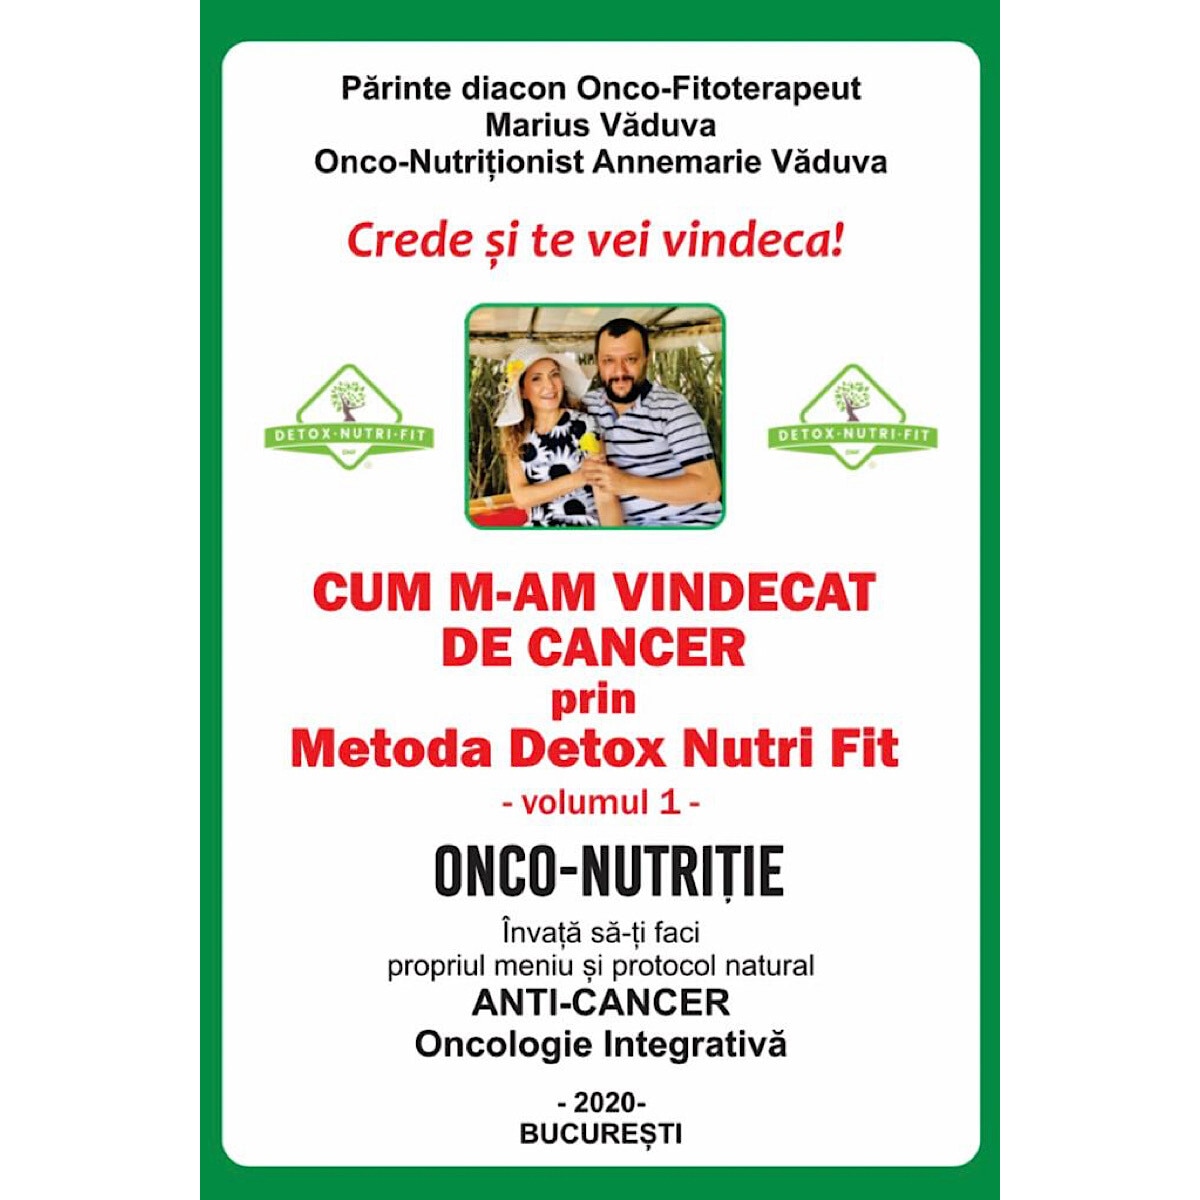 detox nutrifit)